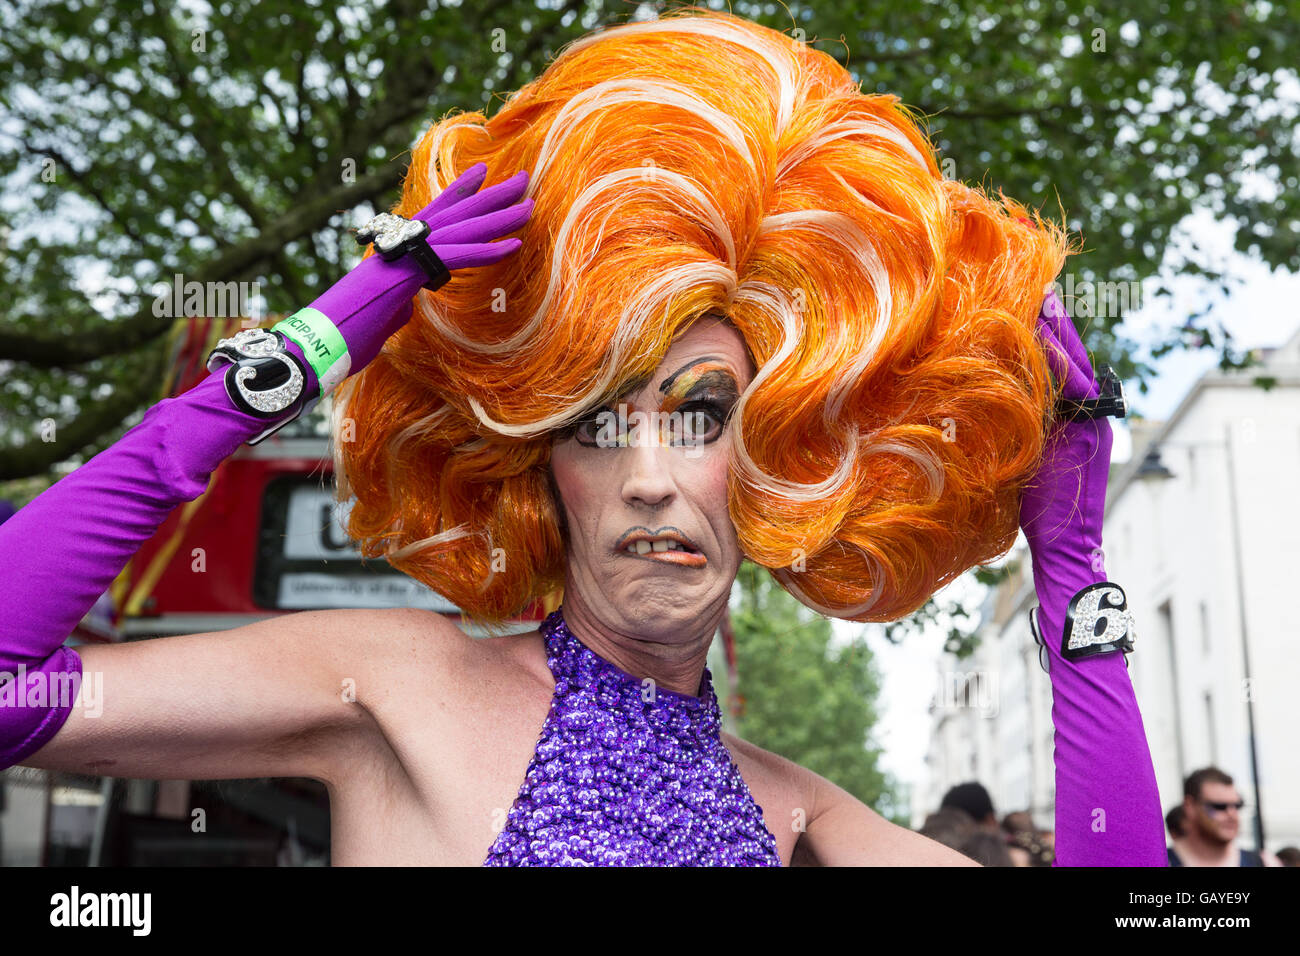 Colorati costumi al Pride Parade di Londra 2016.Fantastica parrucca arancione su uno dei partecipanti Foto Stock